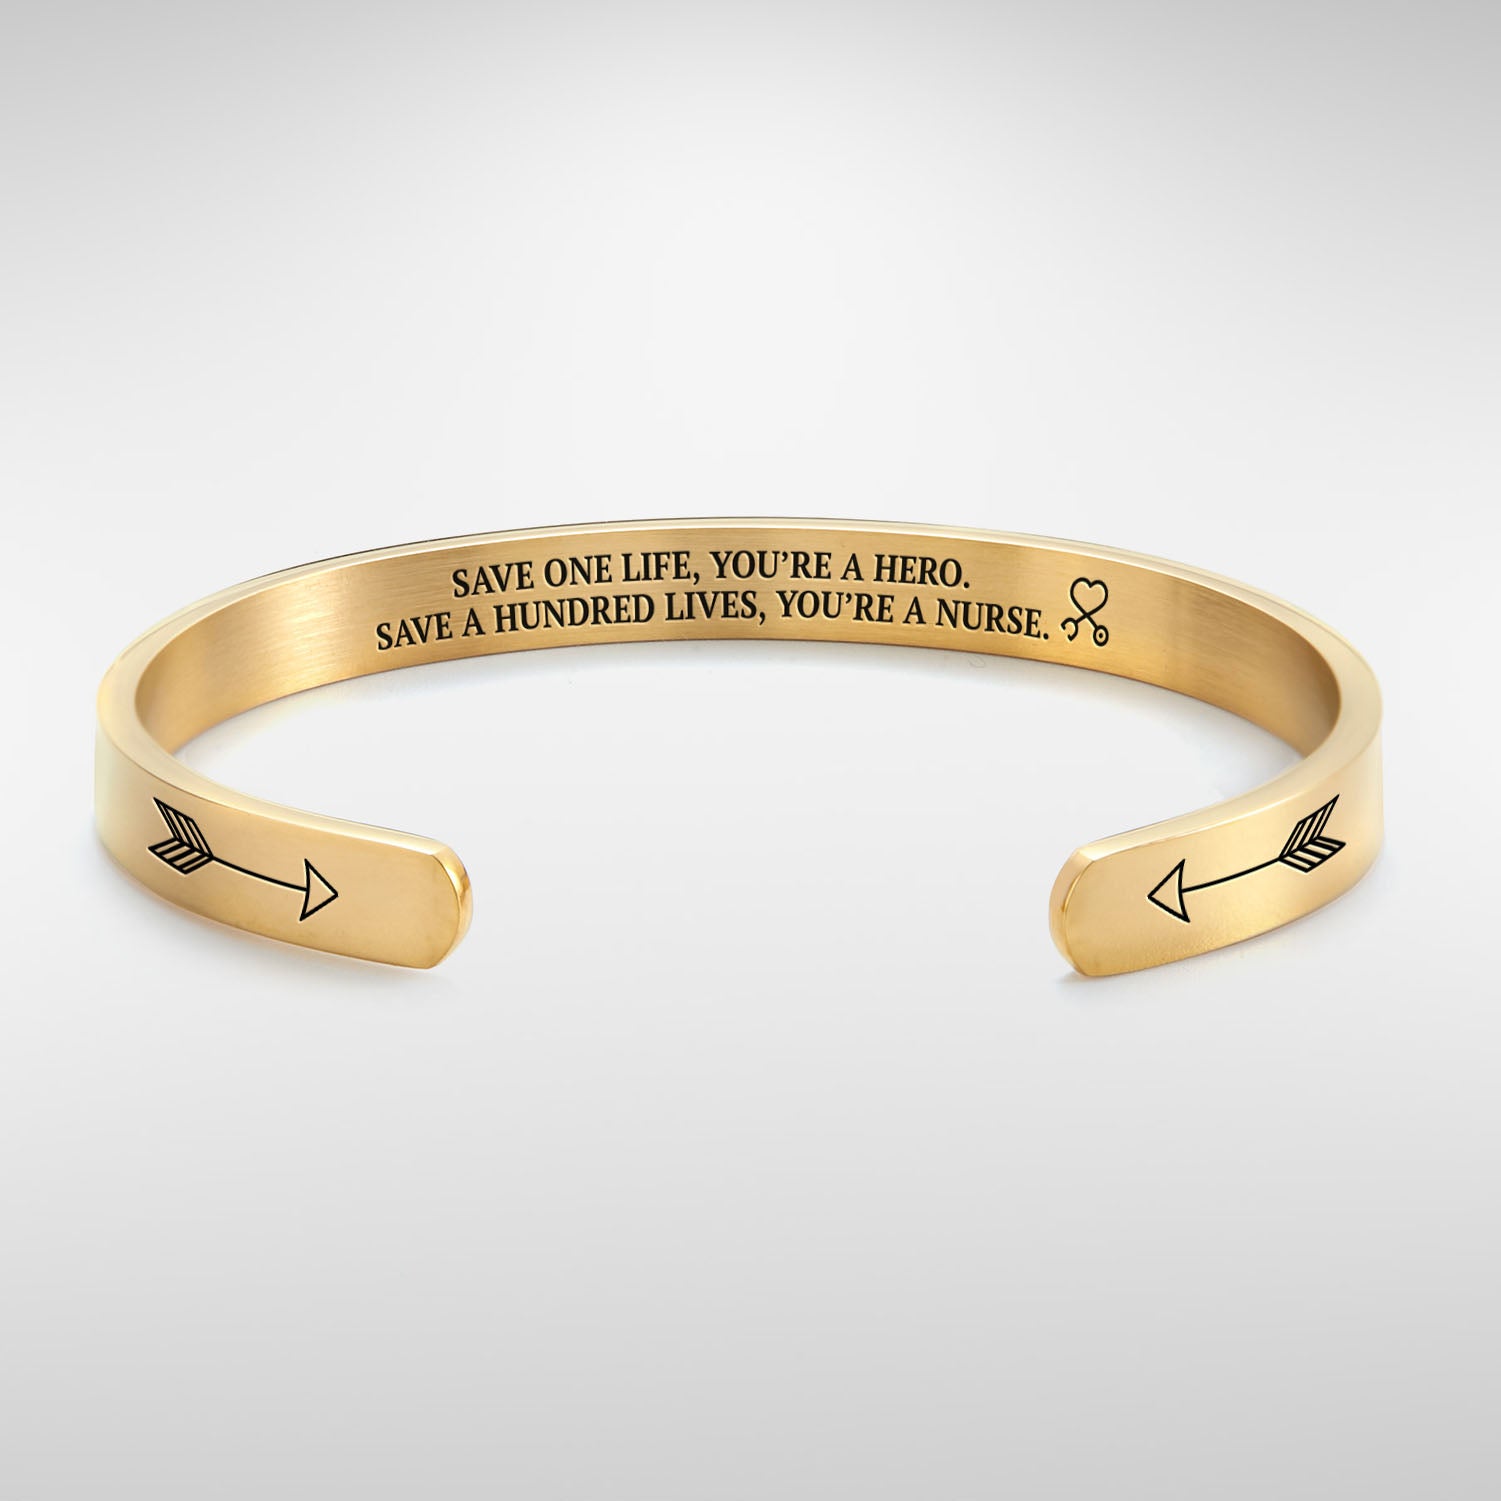 Save a hundred lives, You're a nurse Cuff Bracelet bracelet with gold plating